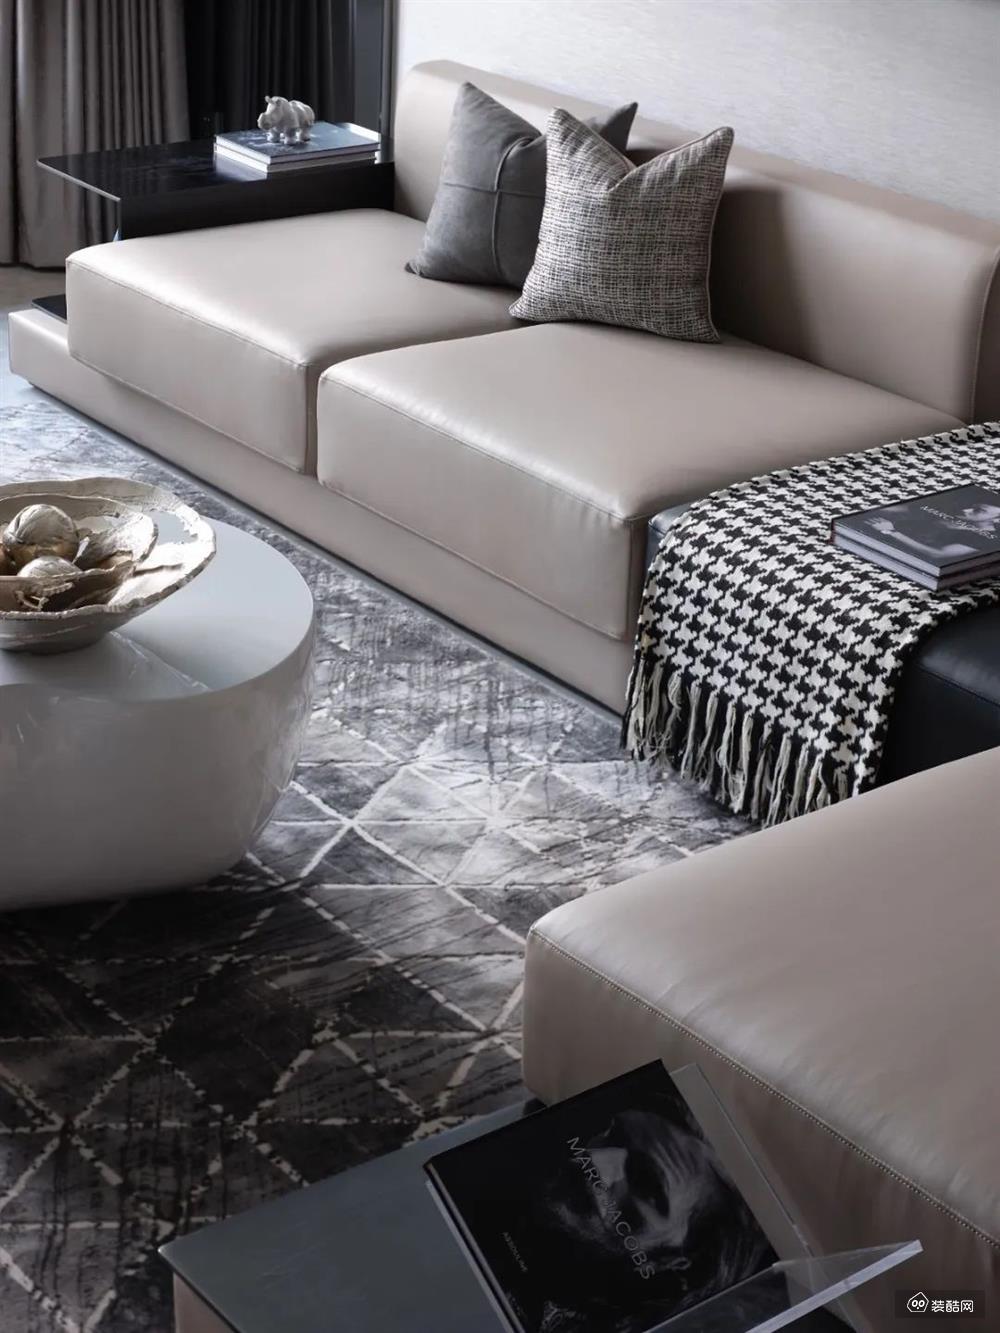 灰色三角图案纹理的地毯,布置卡其色的皮沙发,还有白色的时尚造型茶几